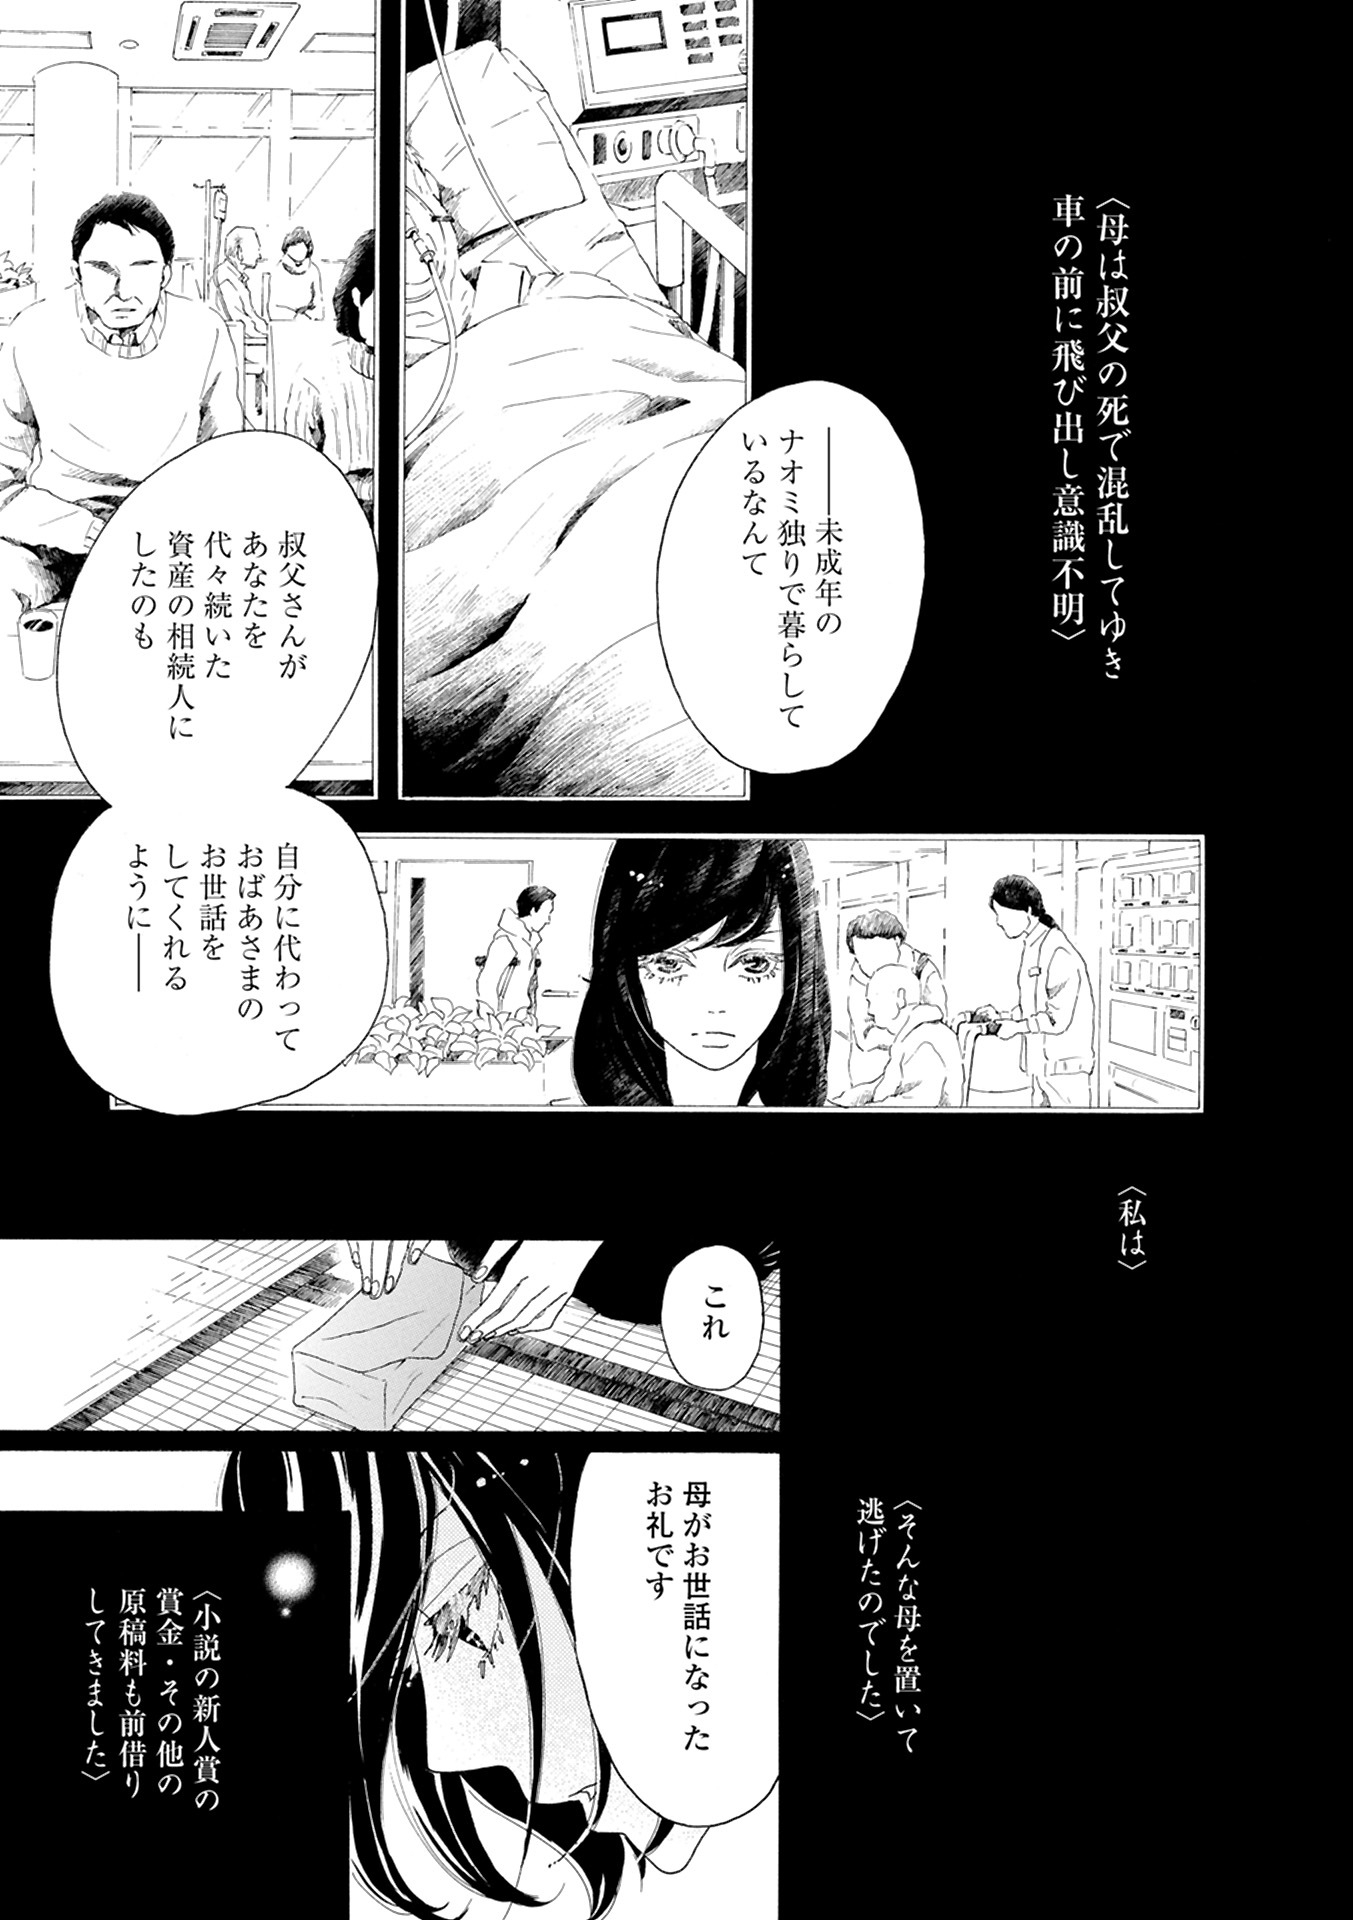 25 田口 トモロヲ 漫画 スカイ ツリー お 土産 キーホルダー